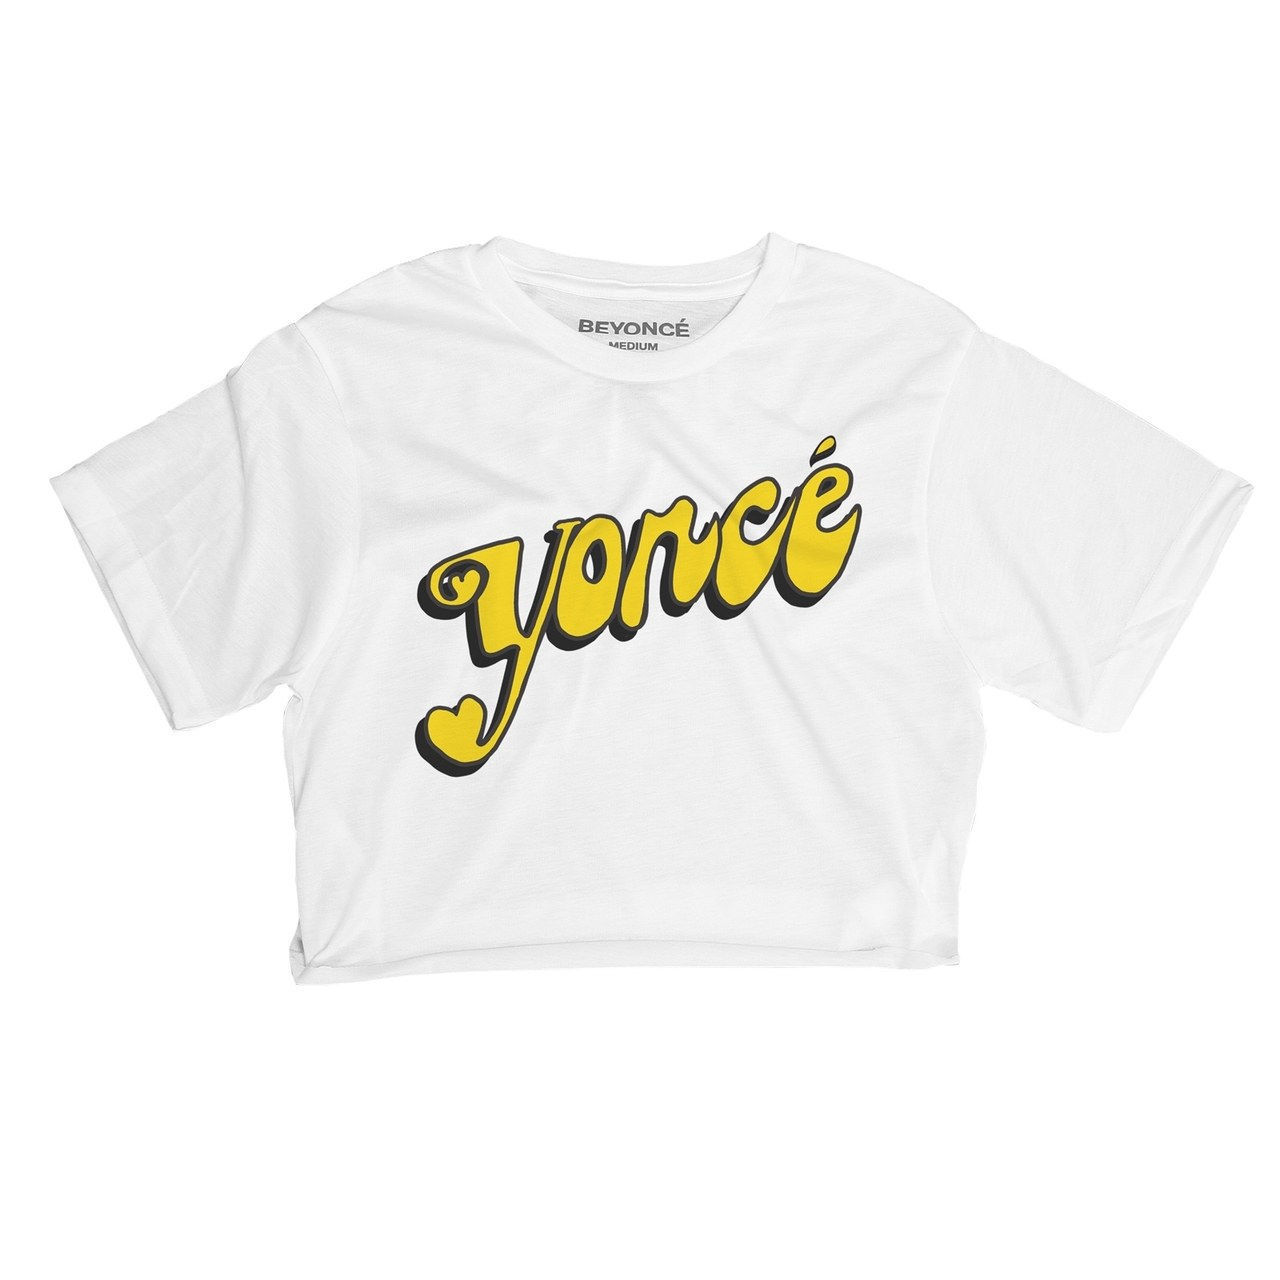 Yoncé White Raw Edge Crop Top, $35, [Beyonce.com](https://shop.beyonce.com/products/62197-yonce-white-raw-edge-crop-top)